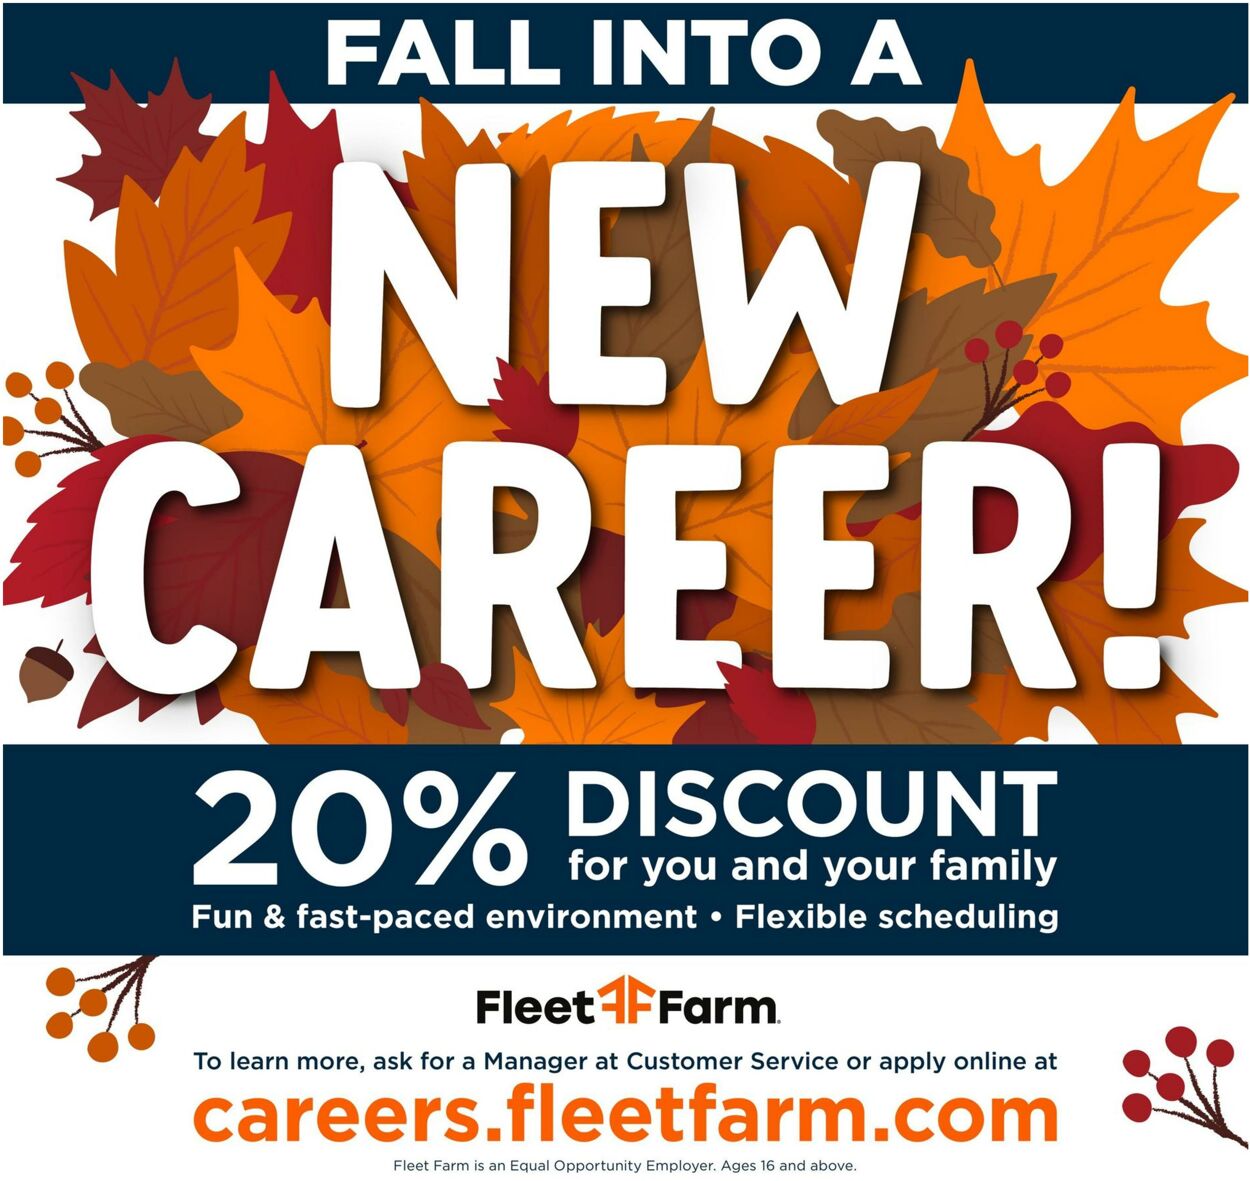 Weekly ad Mills Fleet Farm 10/21/2022 - 10/29/2022